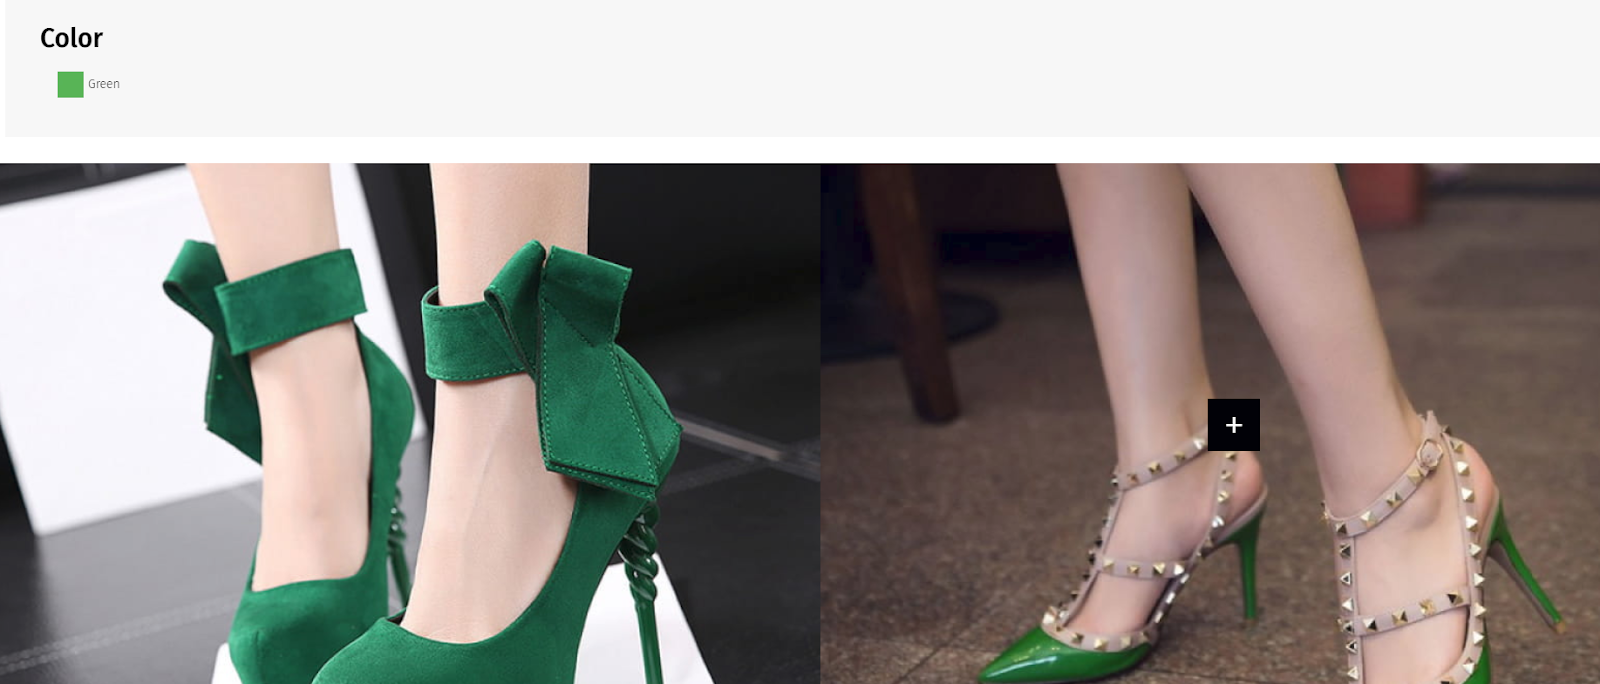 Woman green shoe